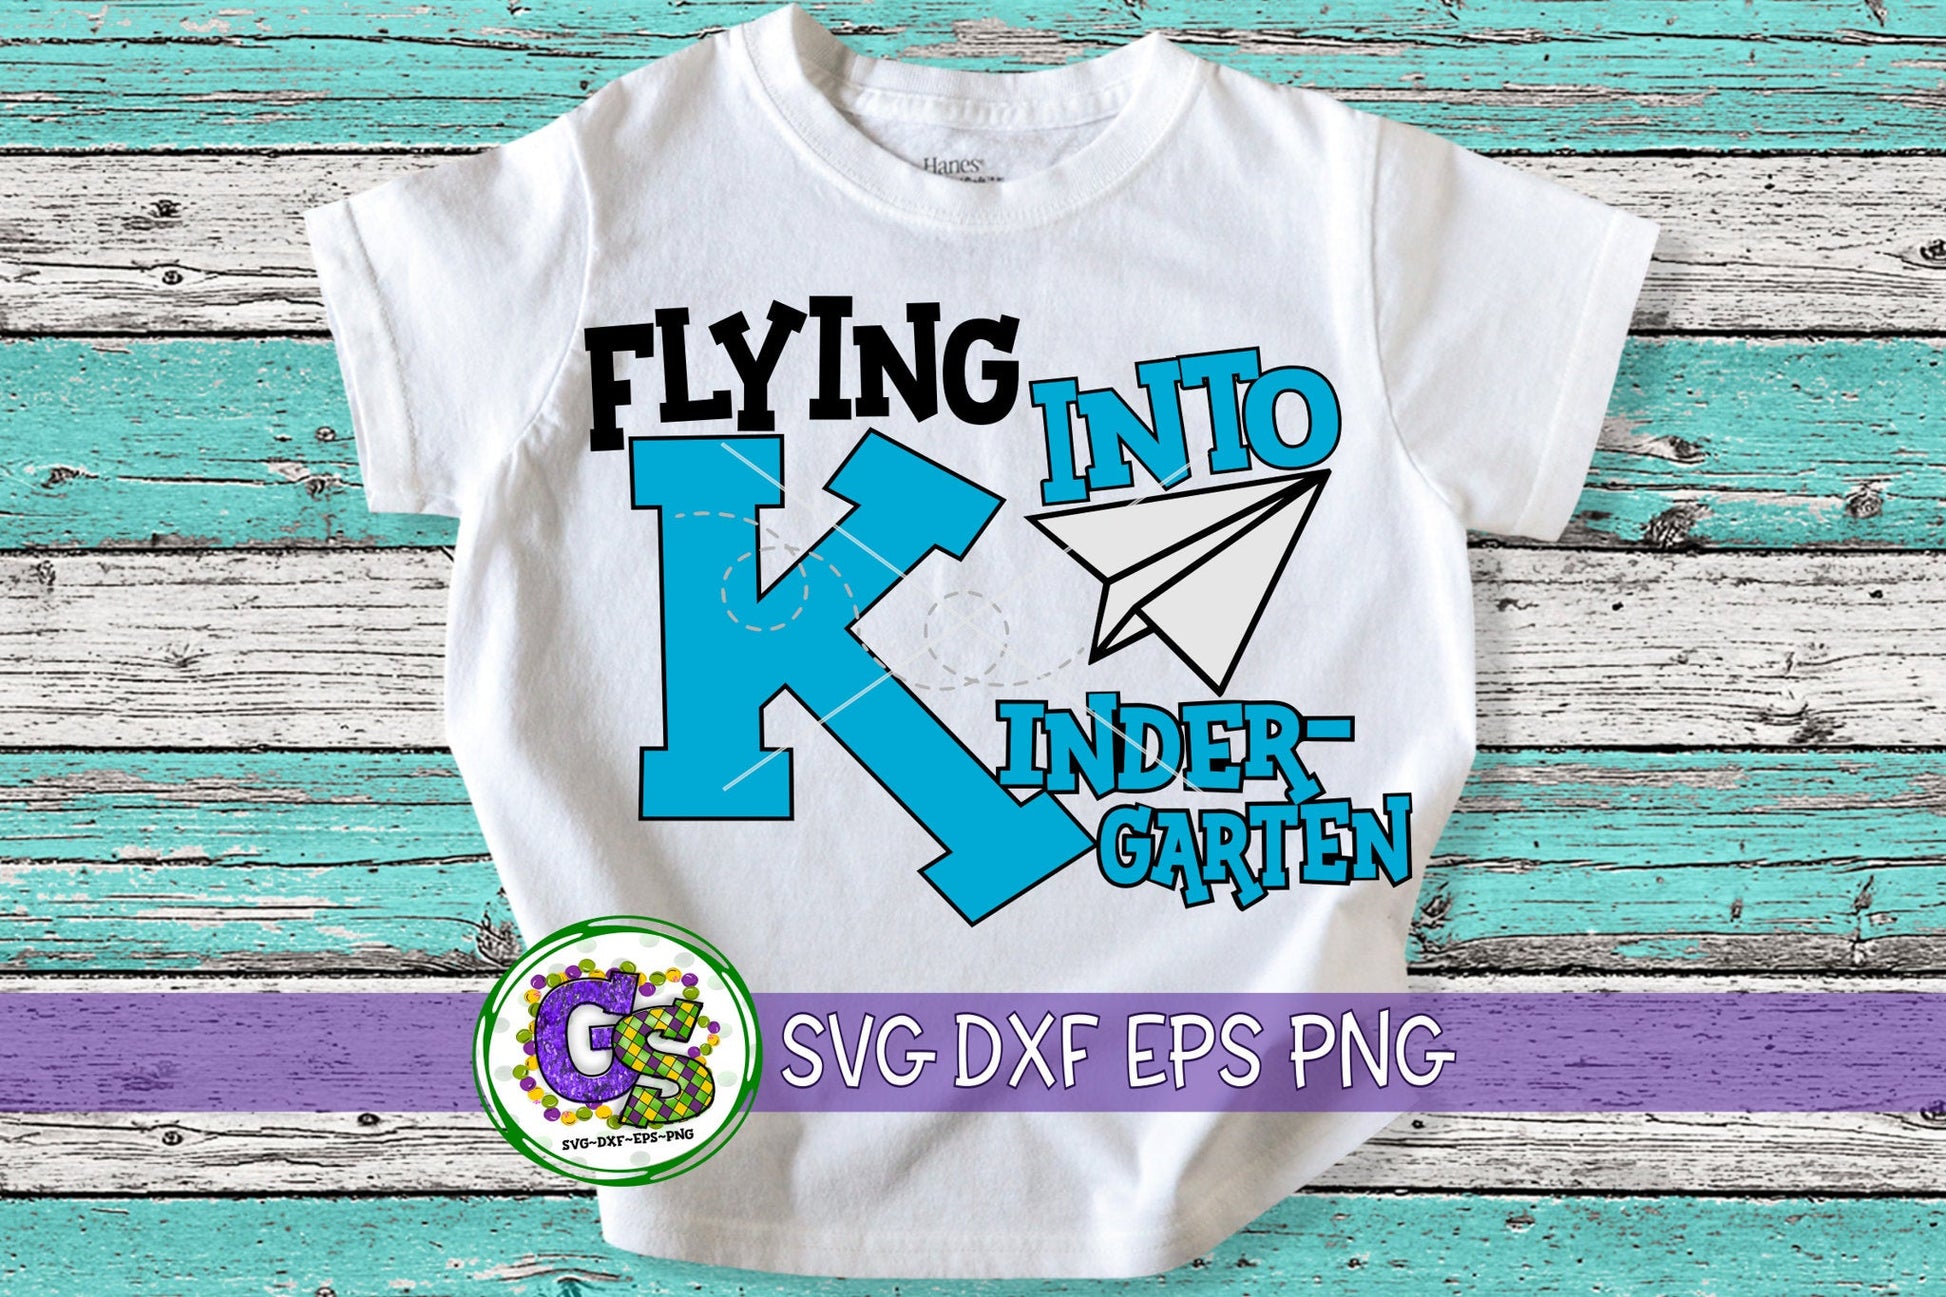 Flying Into Kindergarten svg dxf eps png. Kindergarten SvG | Back To School DxF | School SVG | Kindergarten SvG | Instant Download Cut File